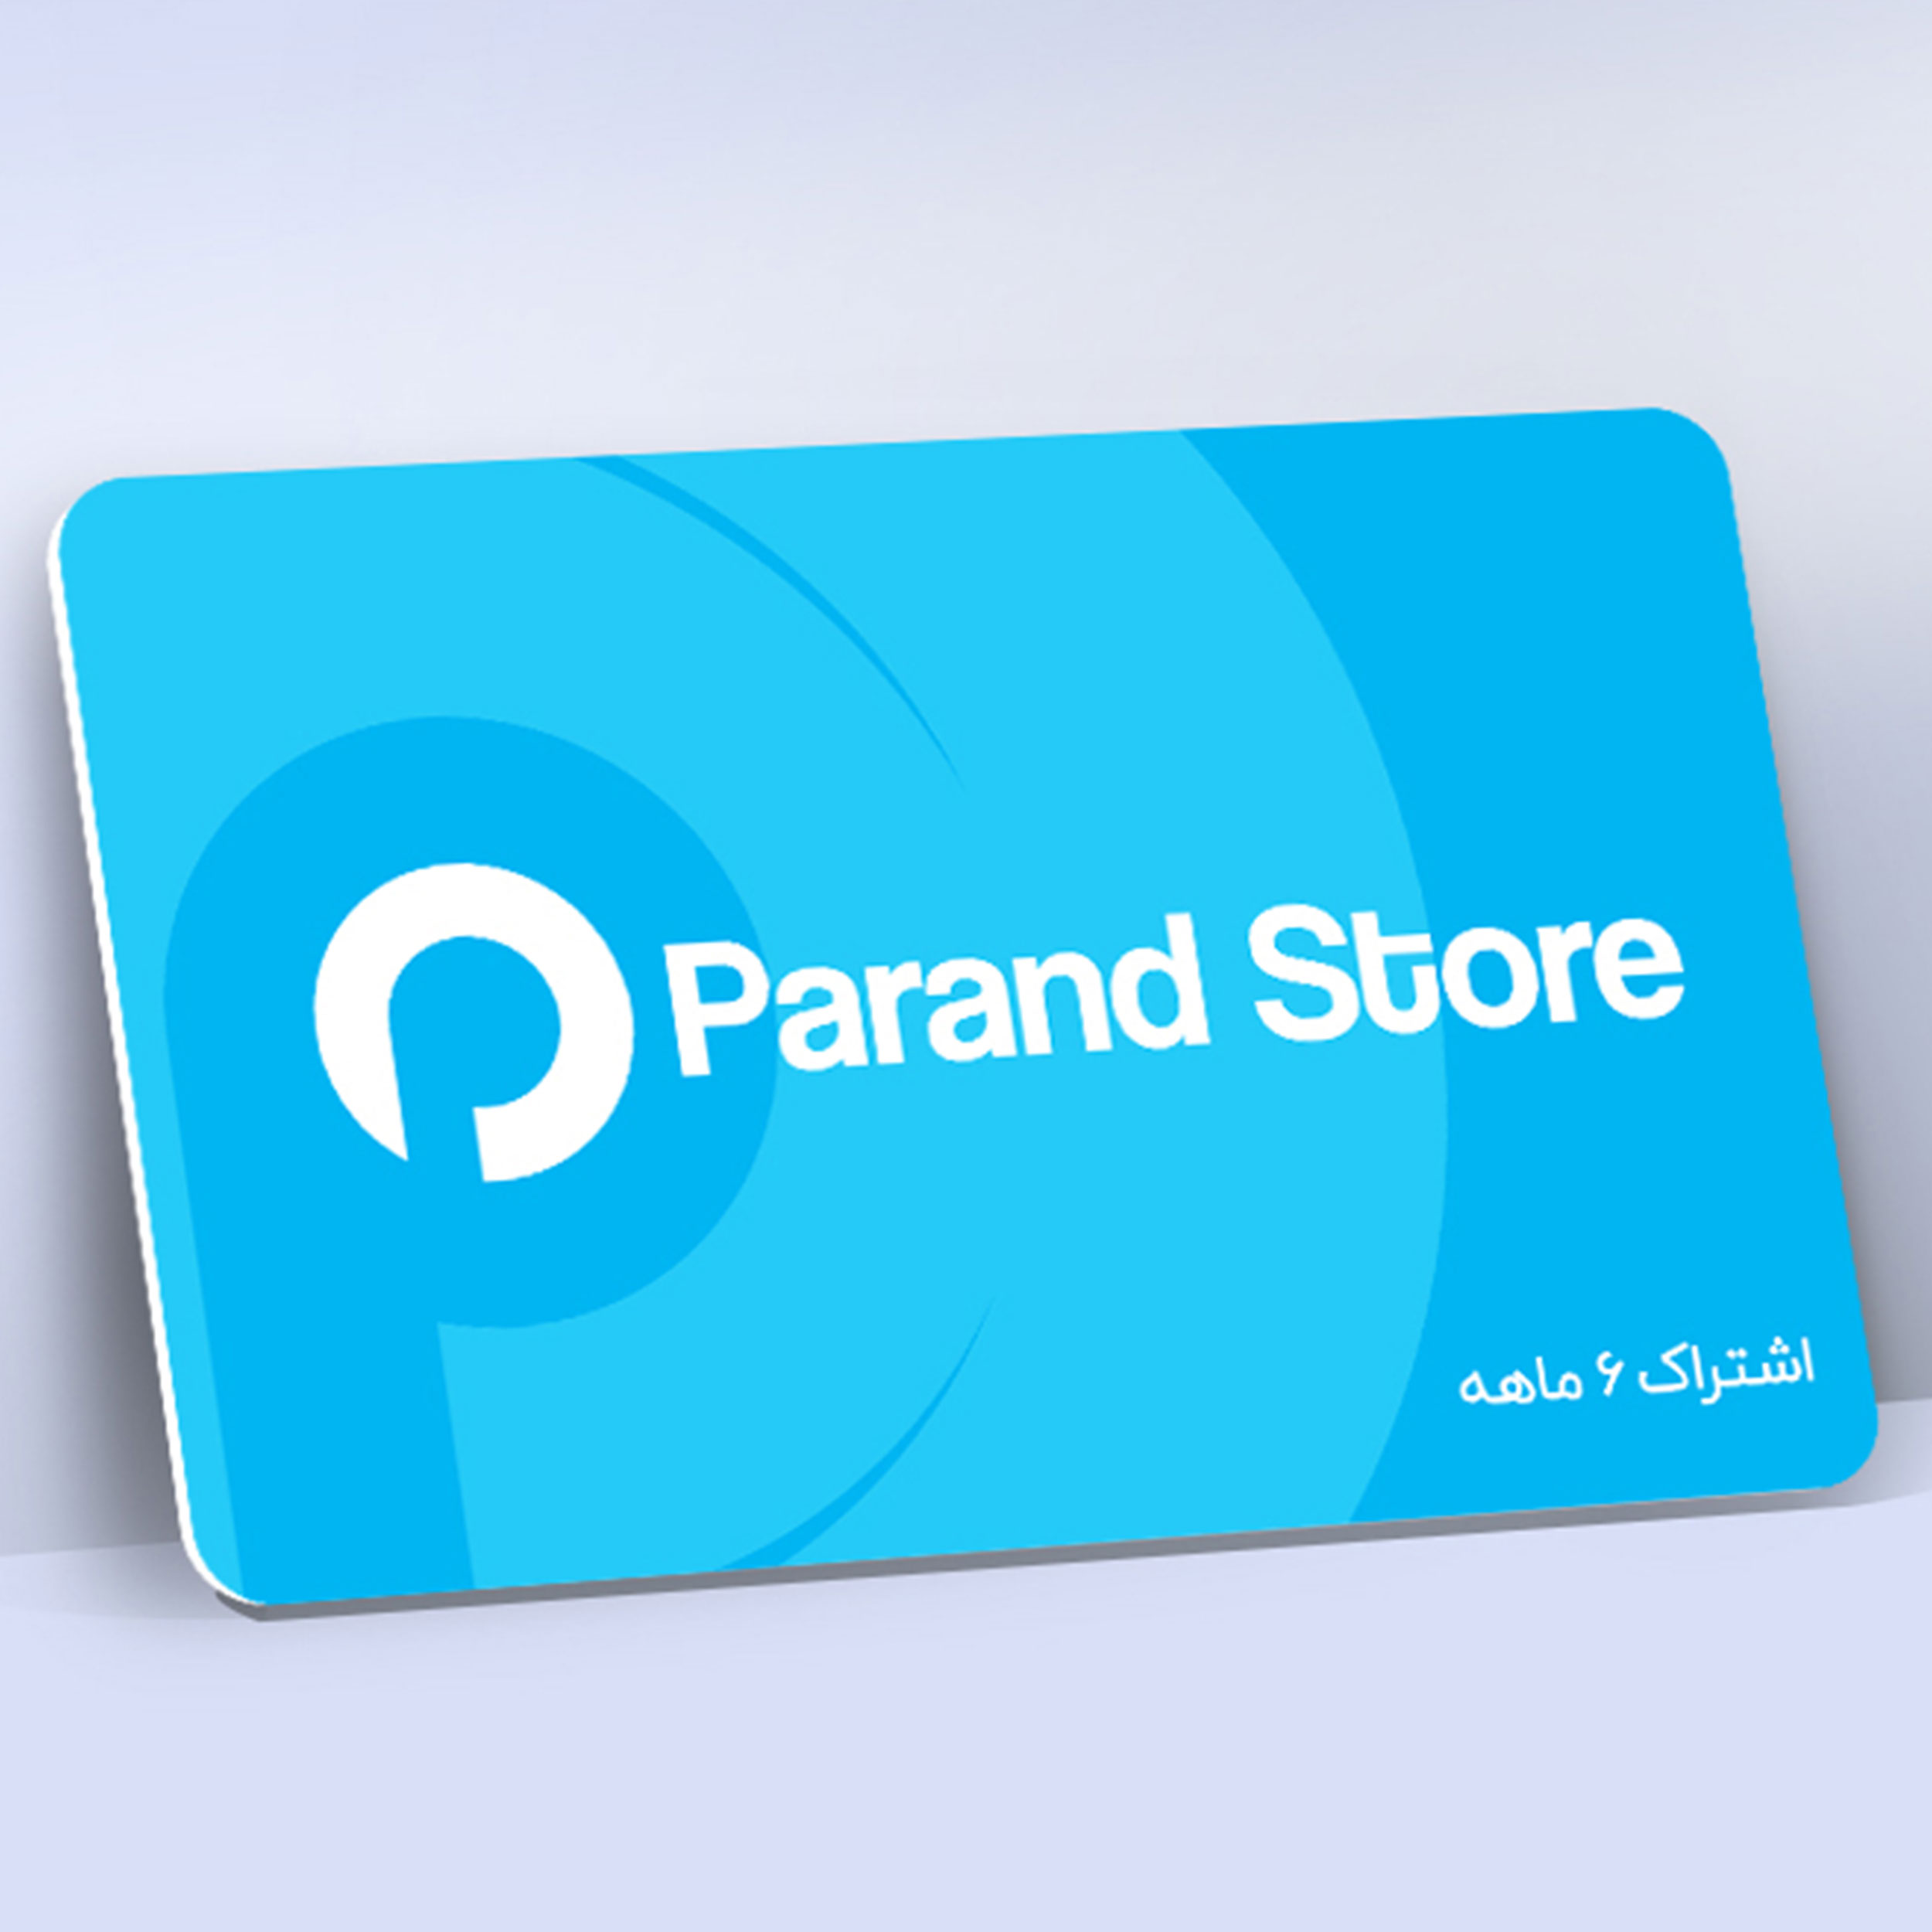 اشتراک 6 ماهه نرم افزار Parand Store شرکت پرند